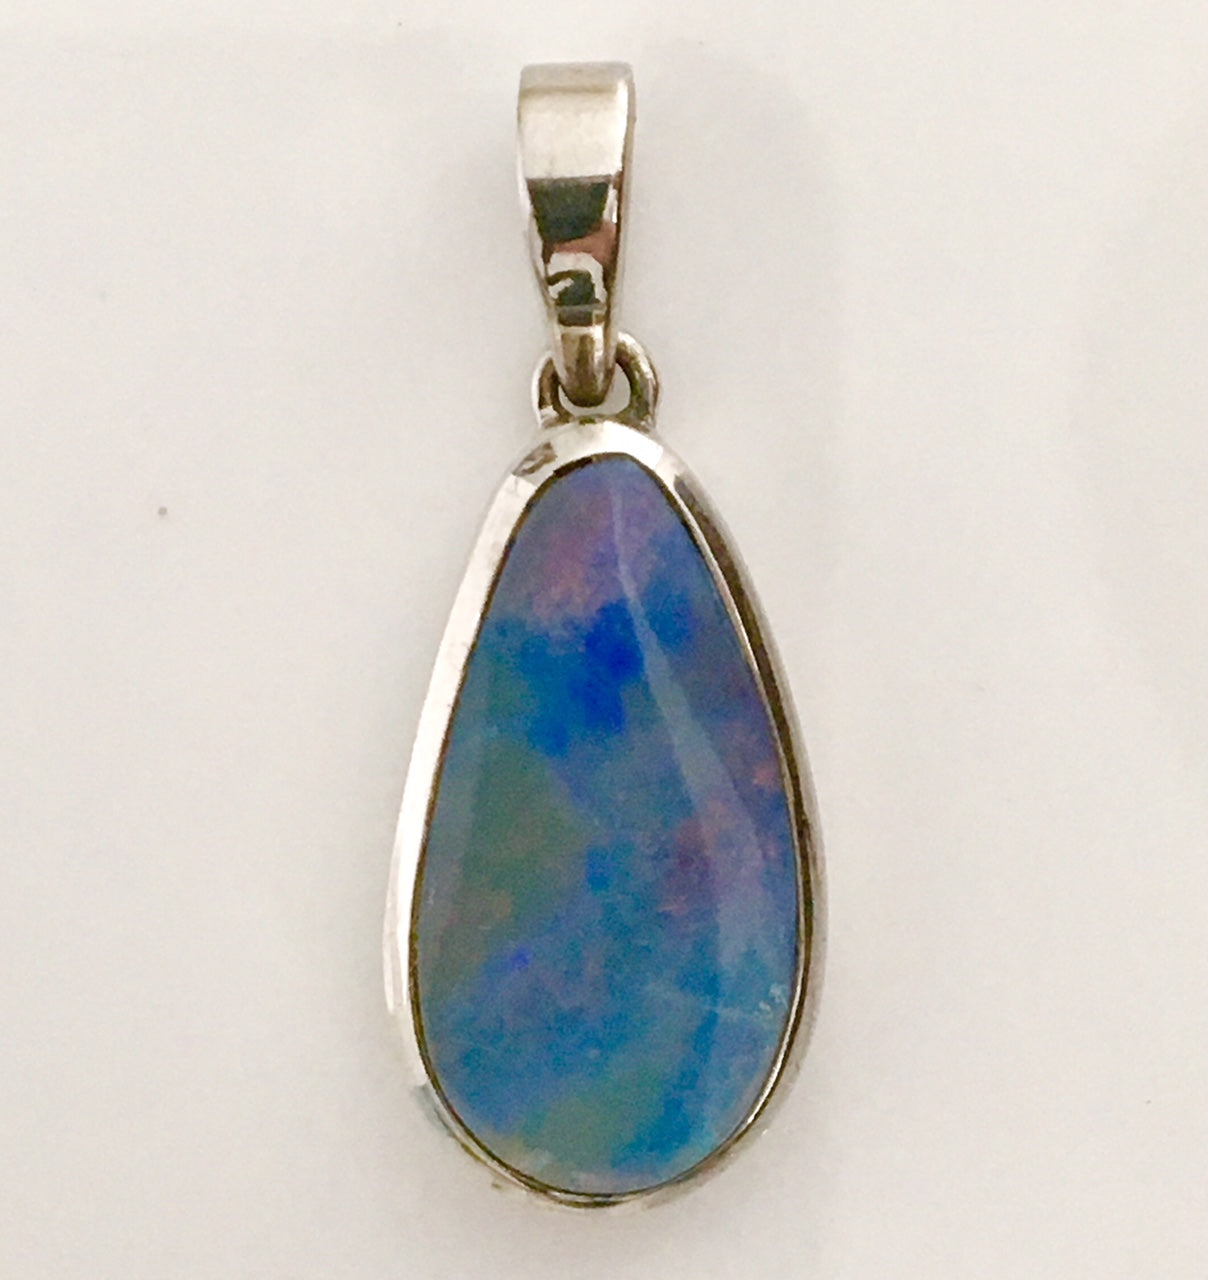 Violet solid boulder opal pendant